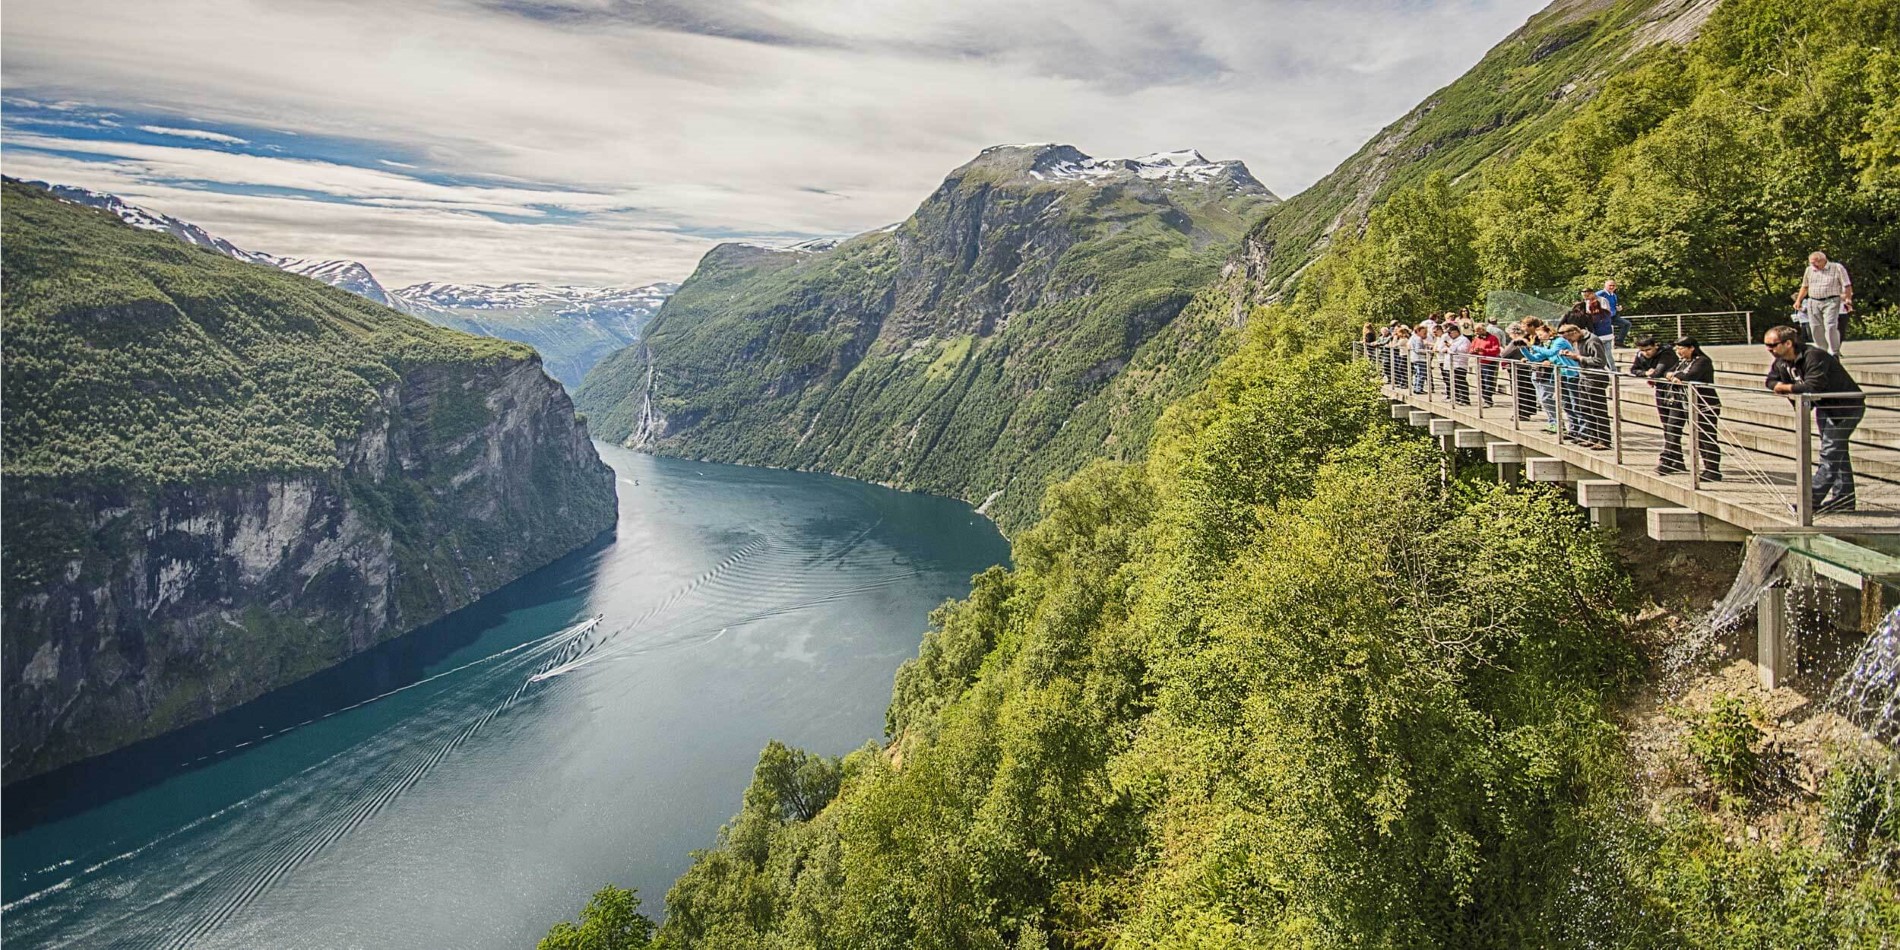 Naviguez avec Hurtigruten pendant les mois d'été (juin-août) et découvrez de près l'étonnant Geirangerfjord.